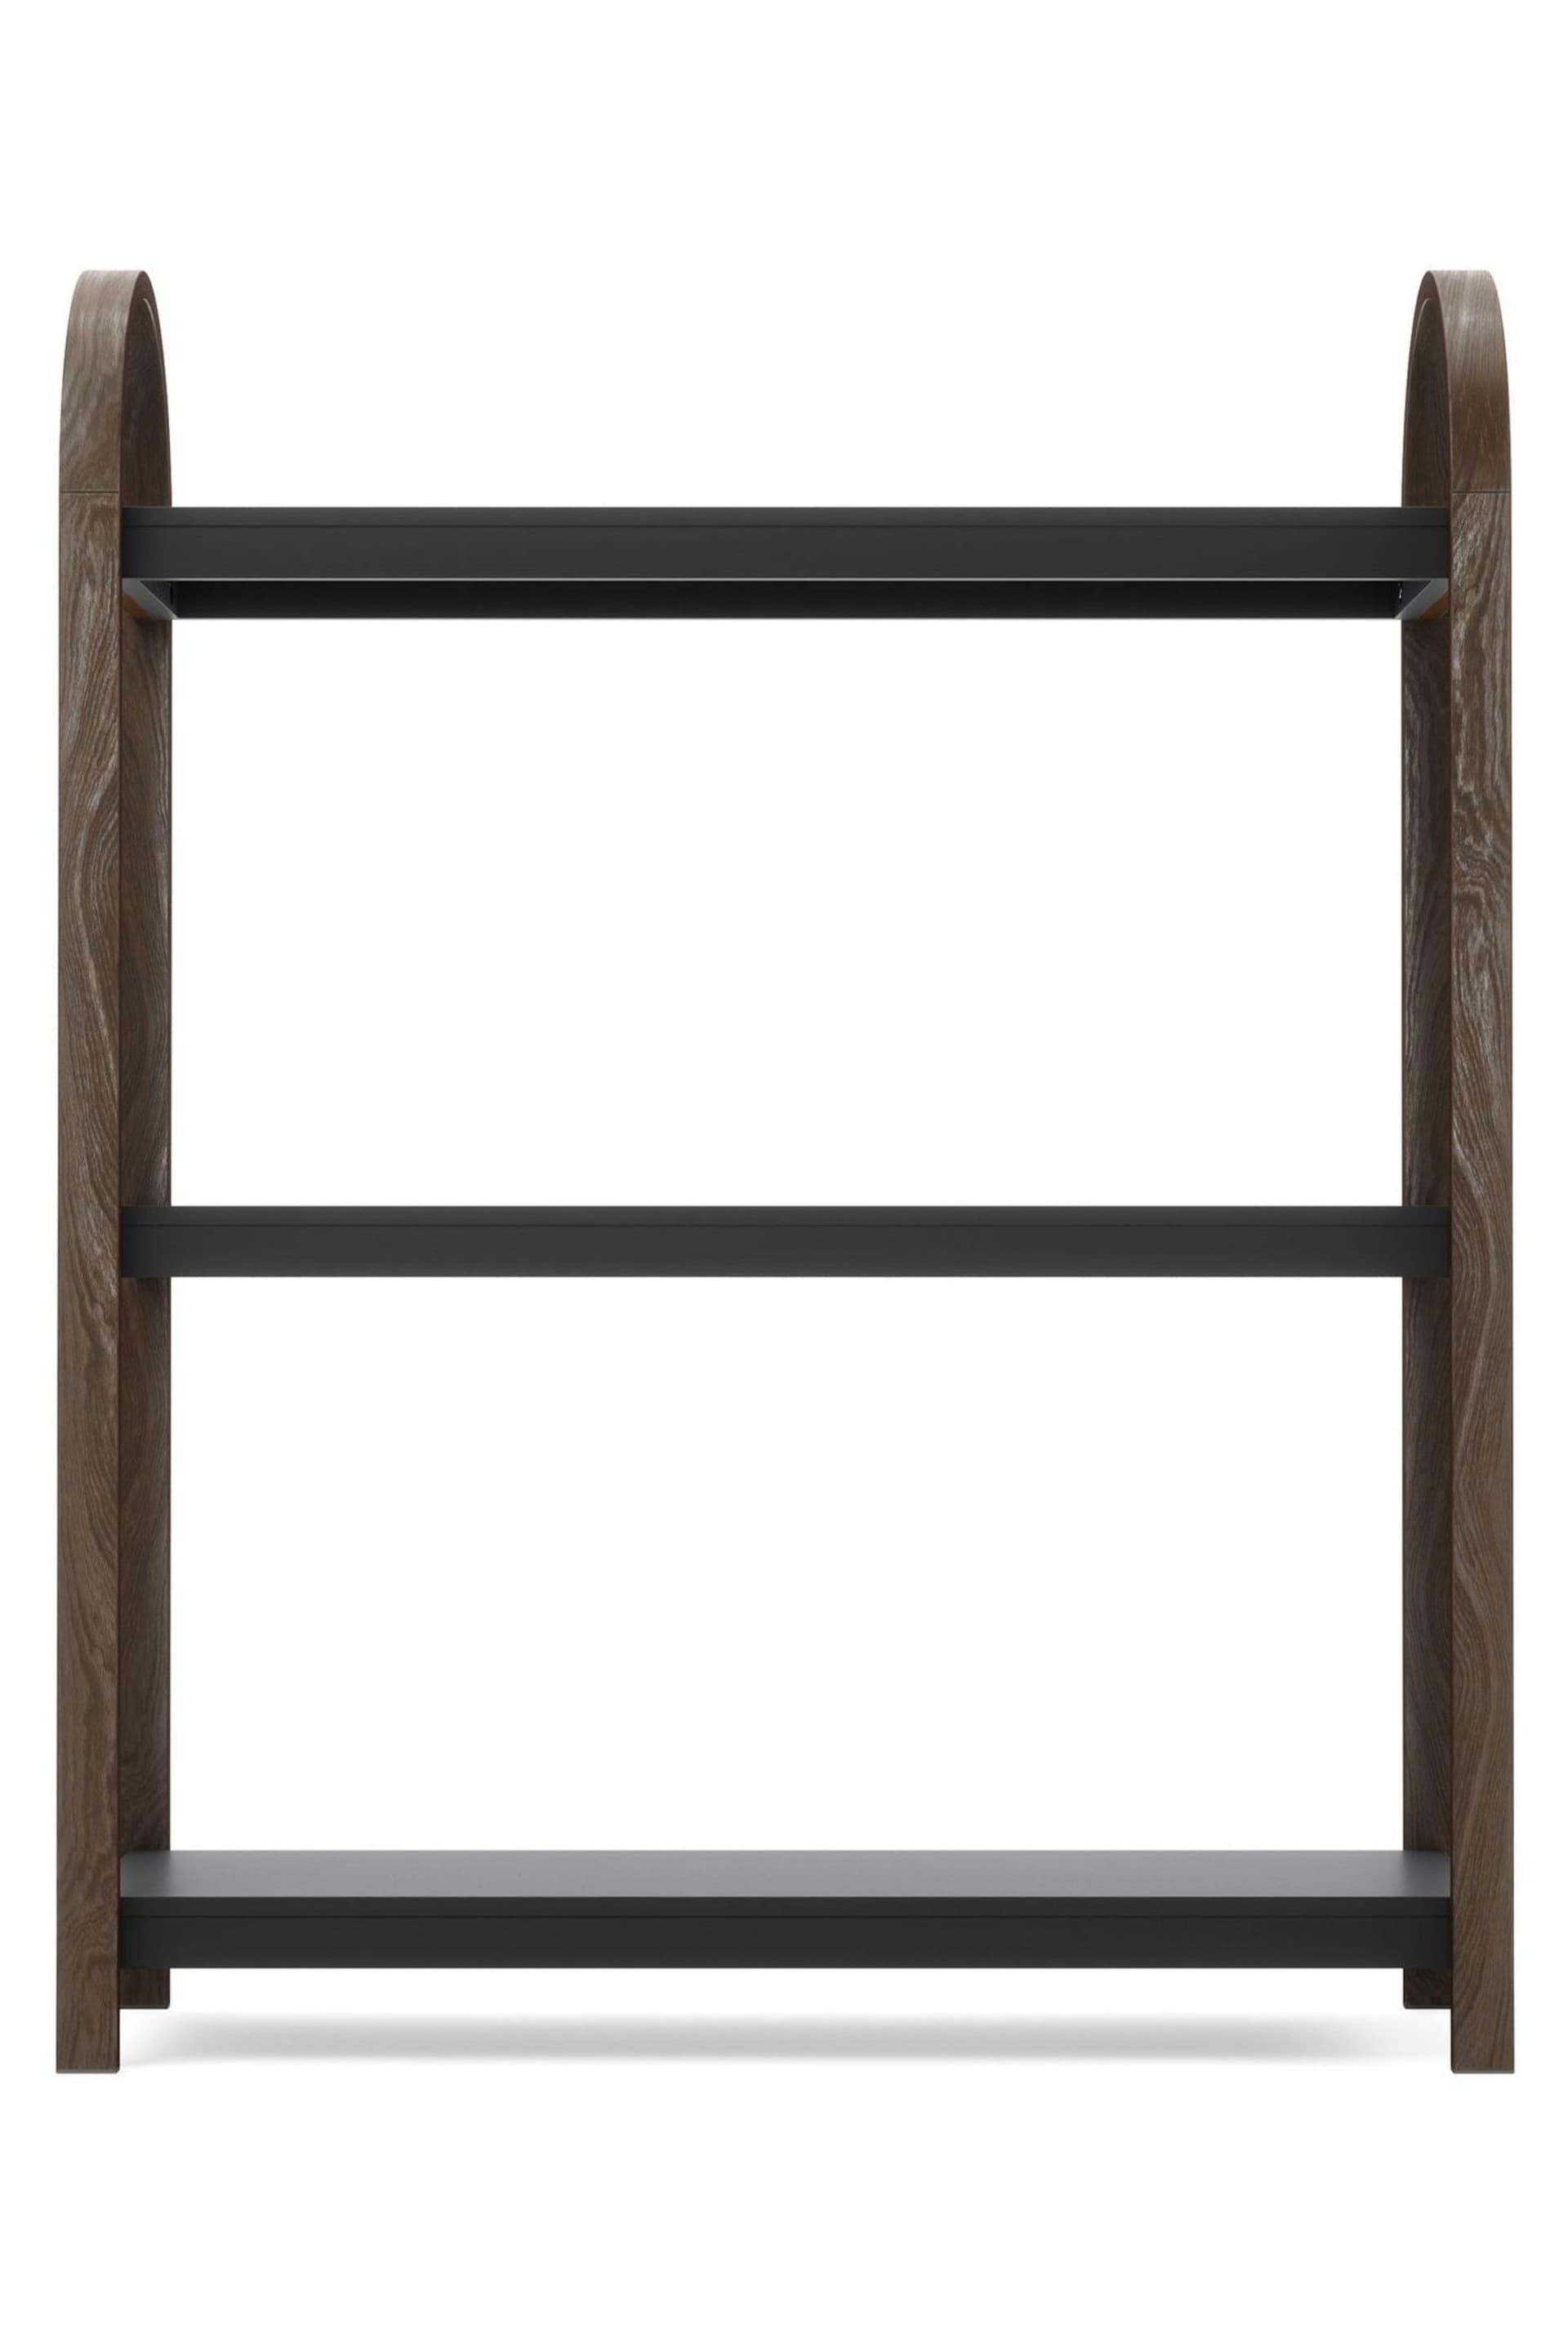 Umbra Dark Brown Bellwood Freestanding 3 Tier Shelf - Image 3 of 4